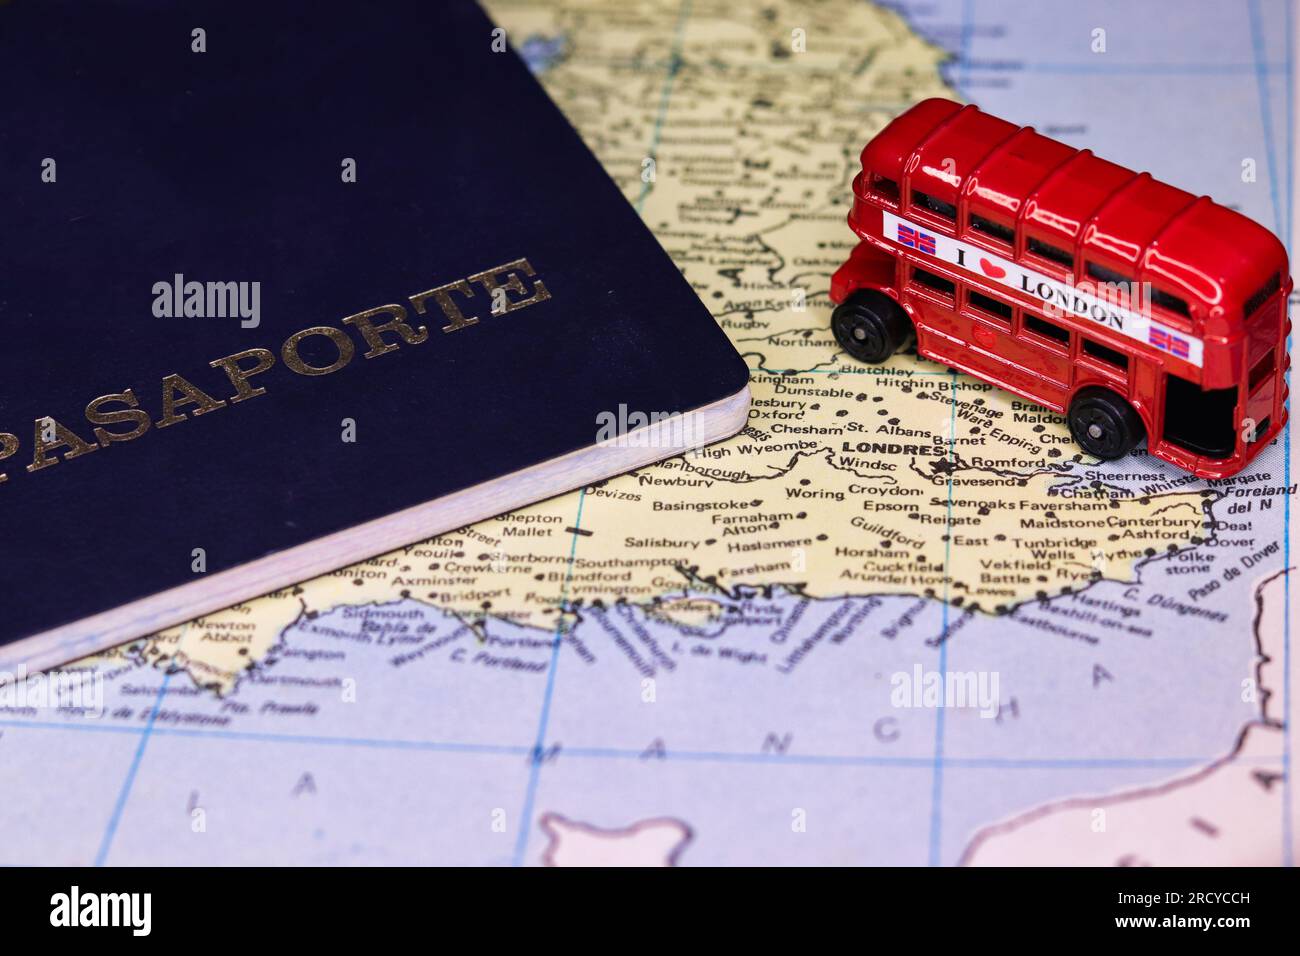 passeport pour voyager au royaume-uni sur une carte et un bus à impériale Banque D'Images